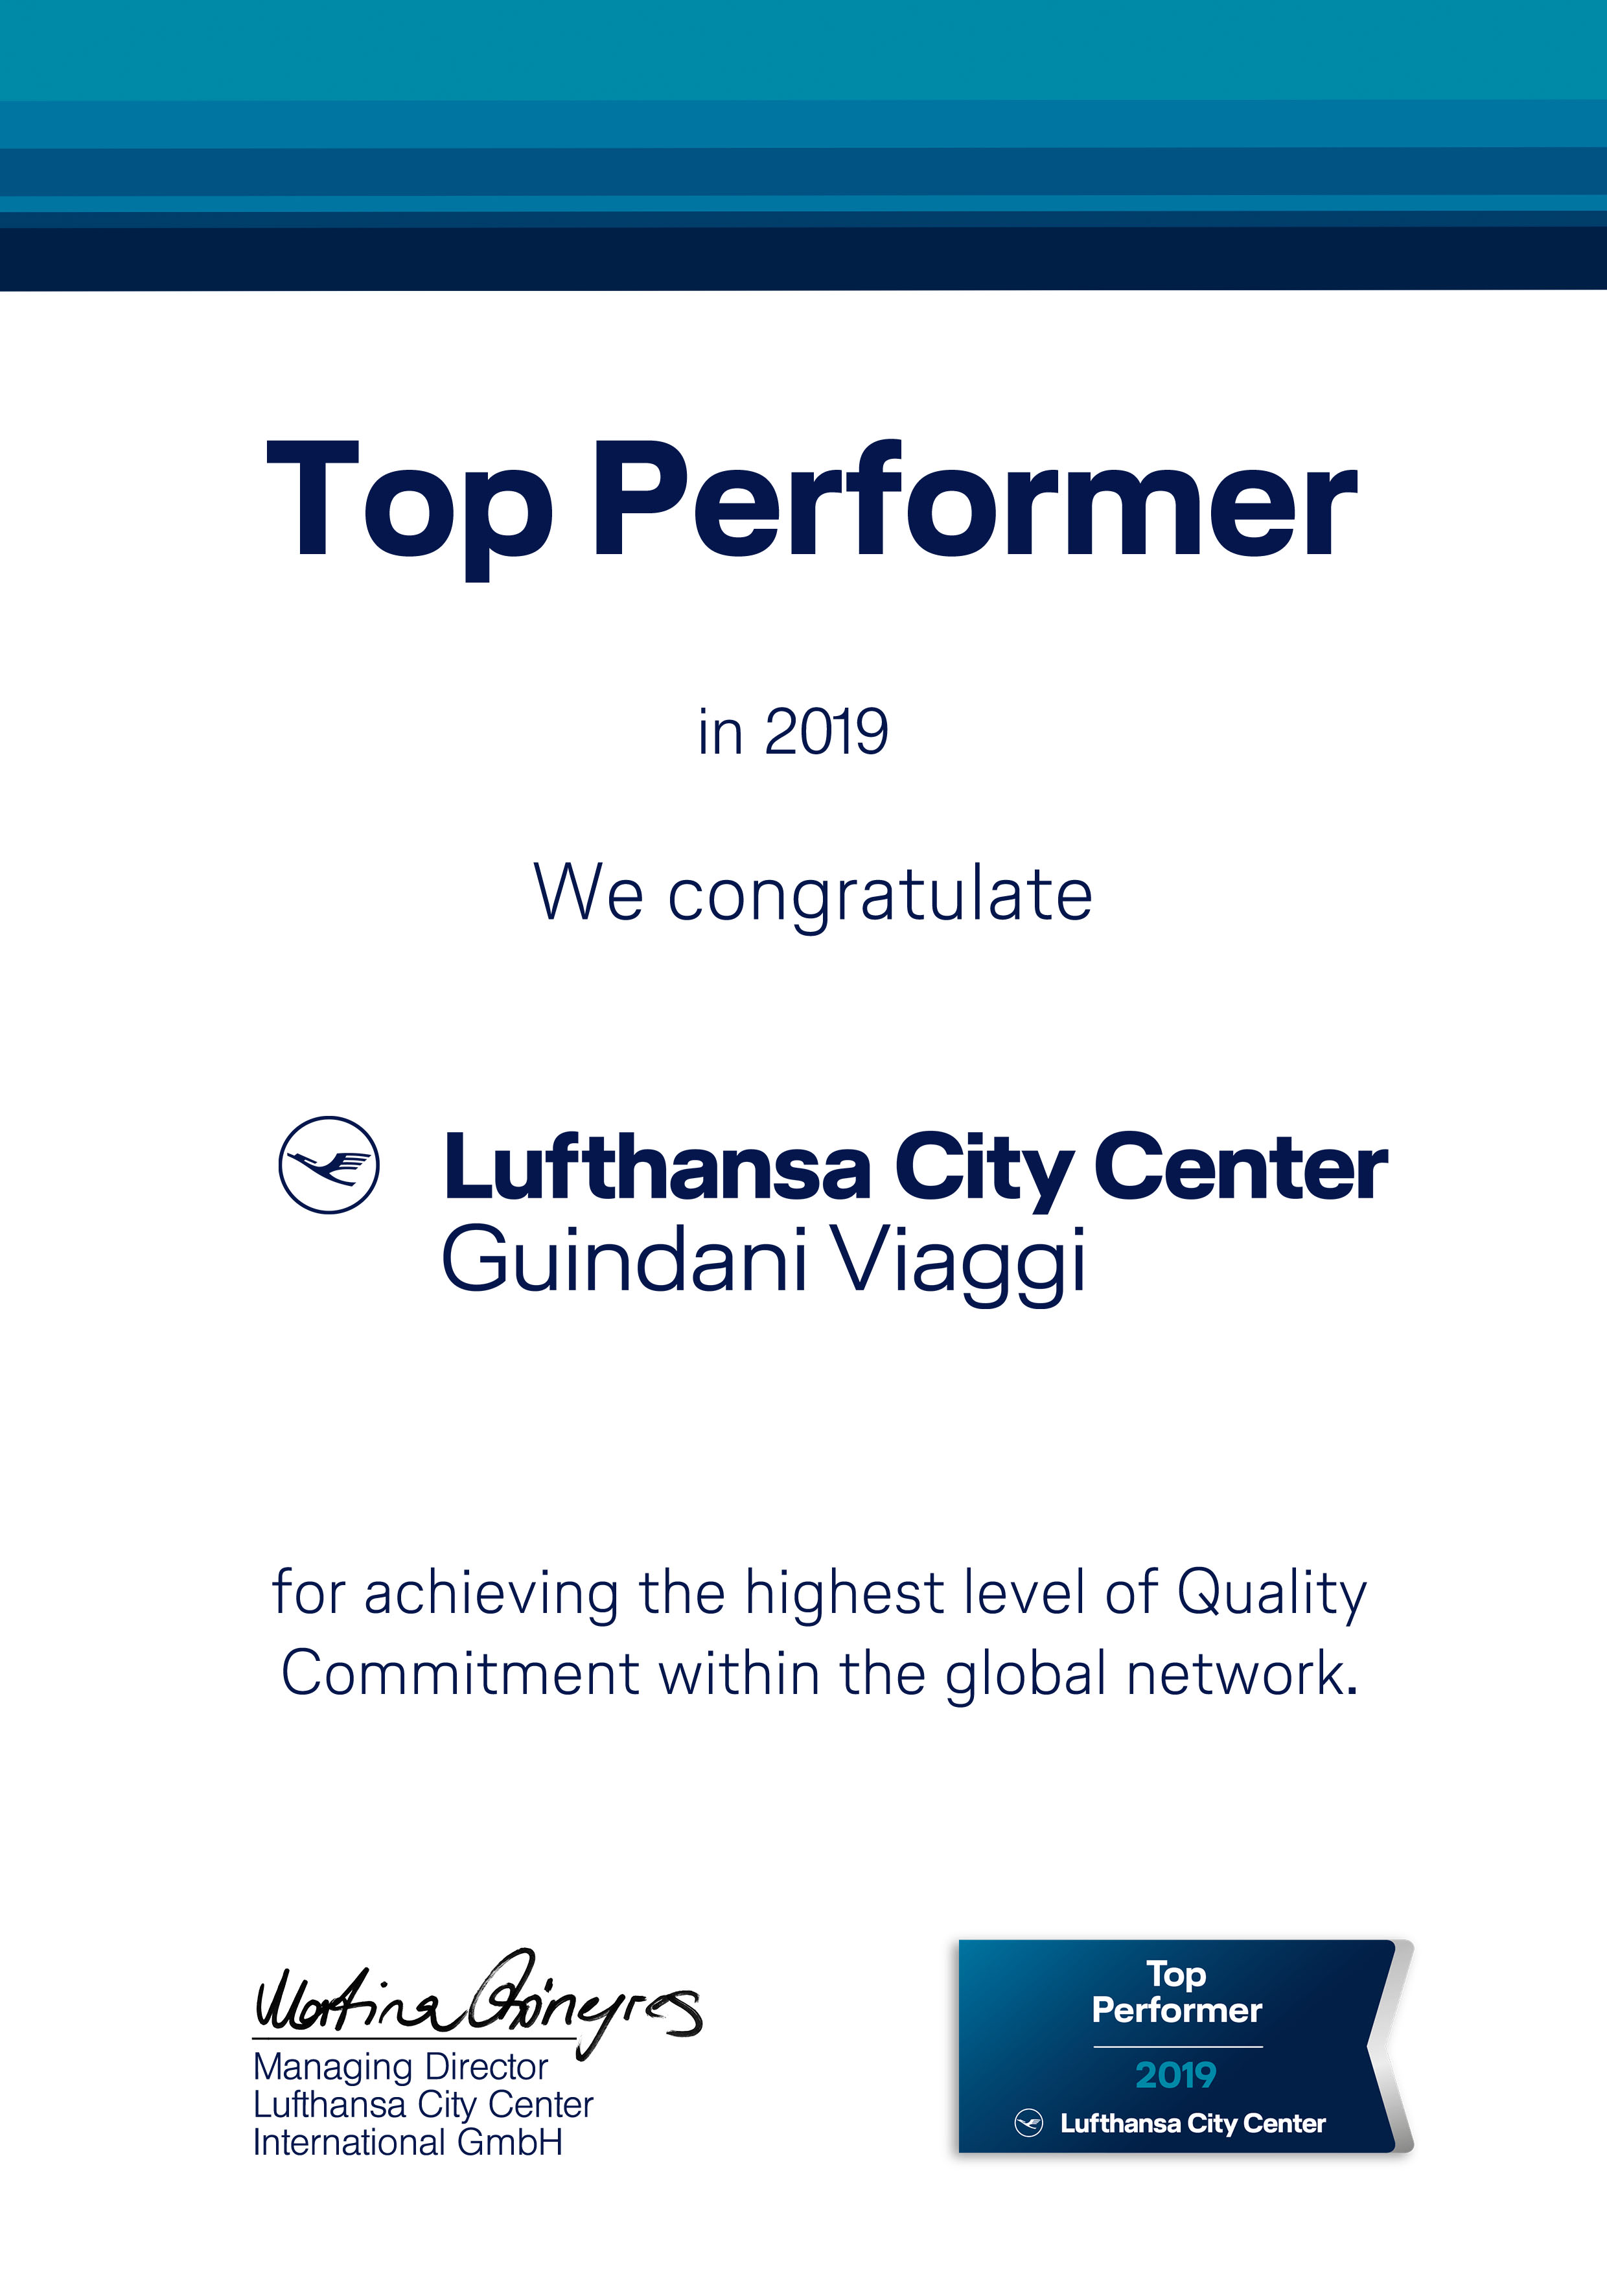 Top performer LCC - Guindani Viaggi